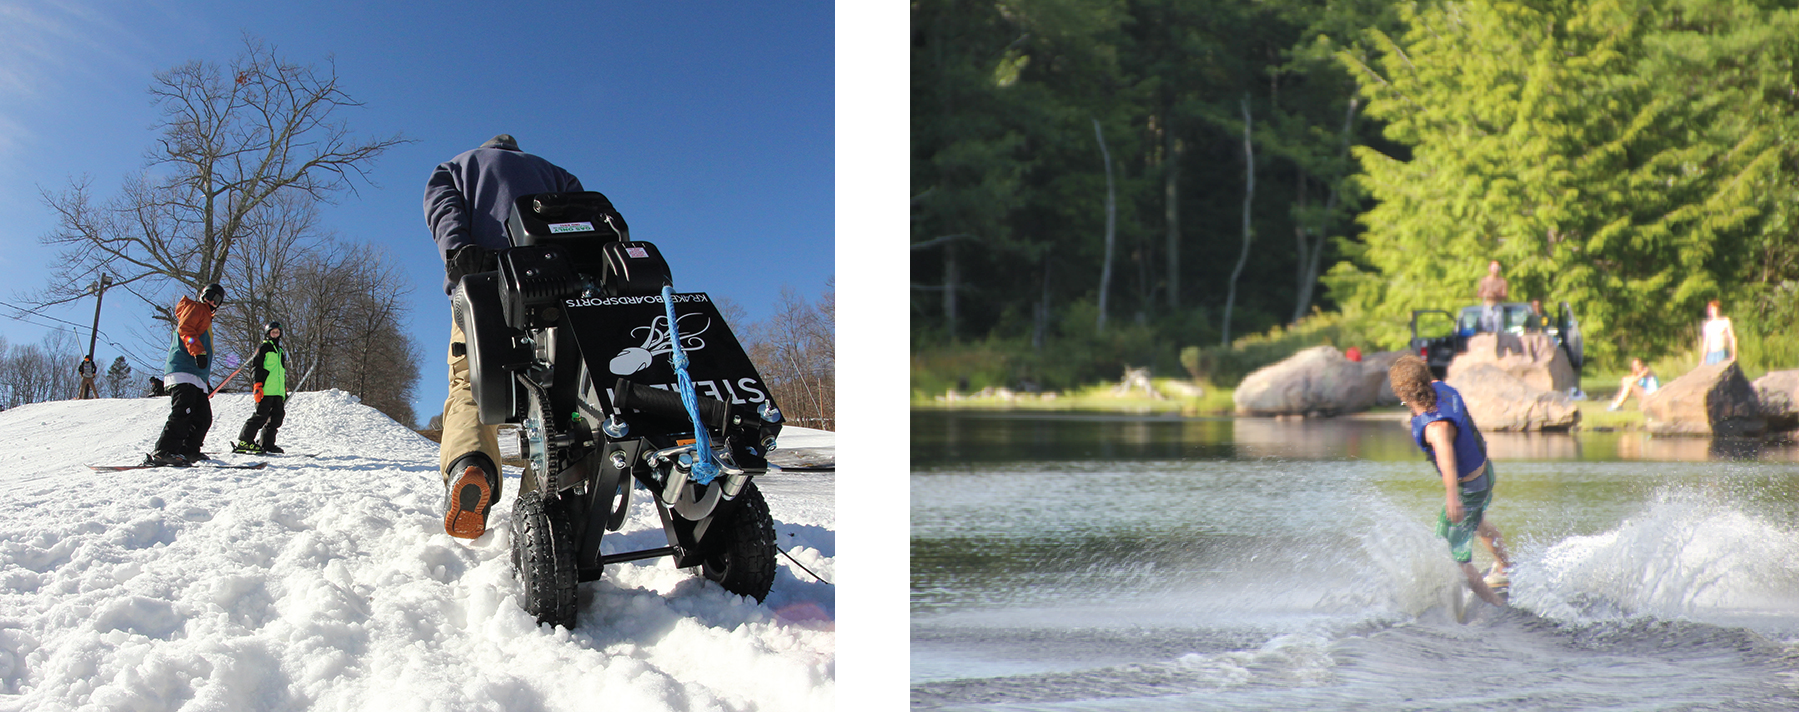 一张照片显示一个人带着轮子上的绞车爬上积雪覆盖的山丘。 一张照片显示一个人在湖上滑雪。